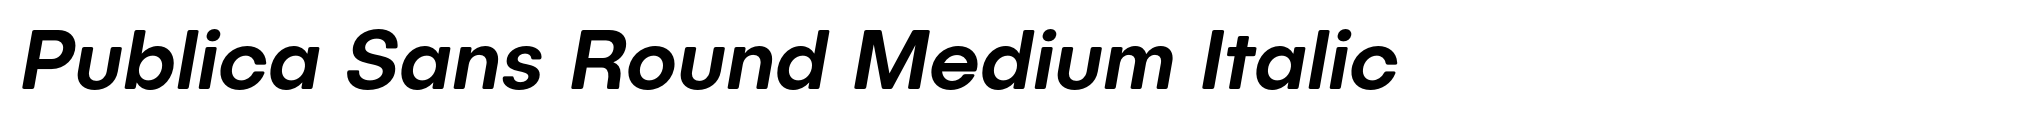 Publica Sans Round Medium Italic image